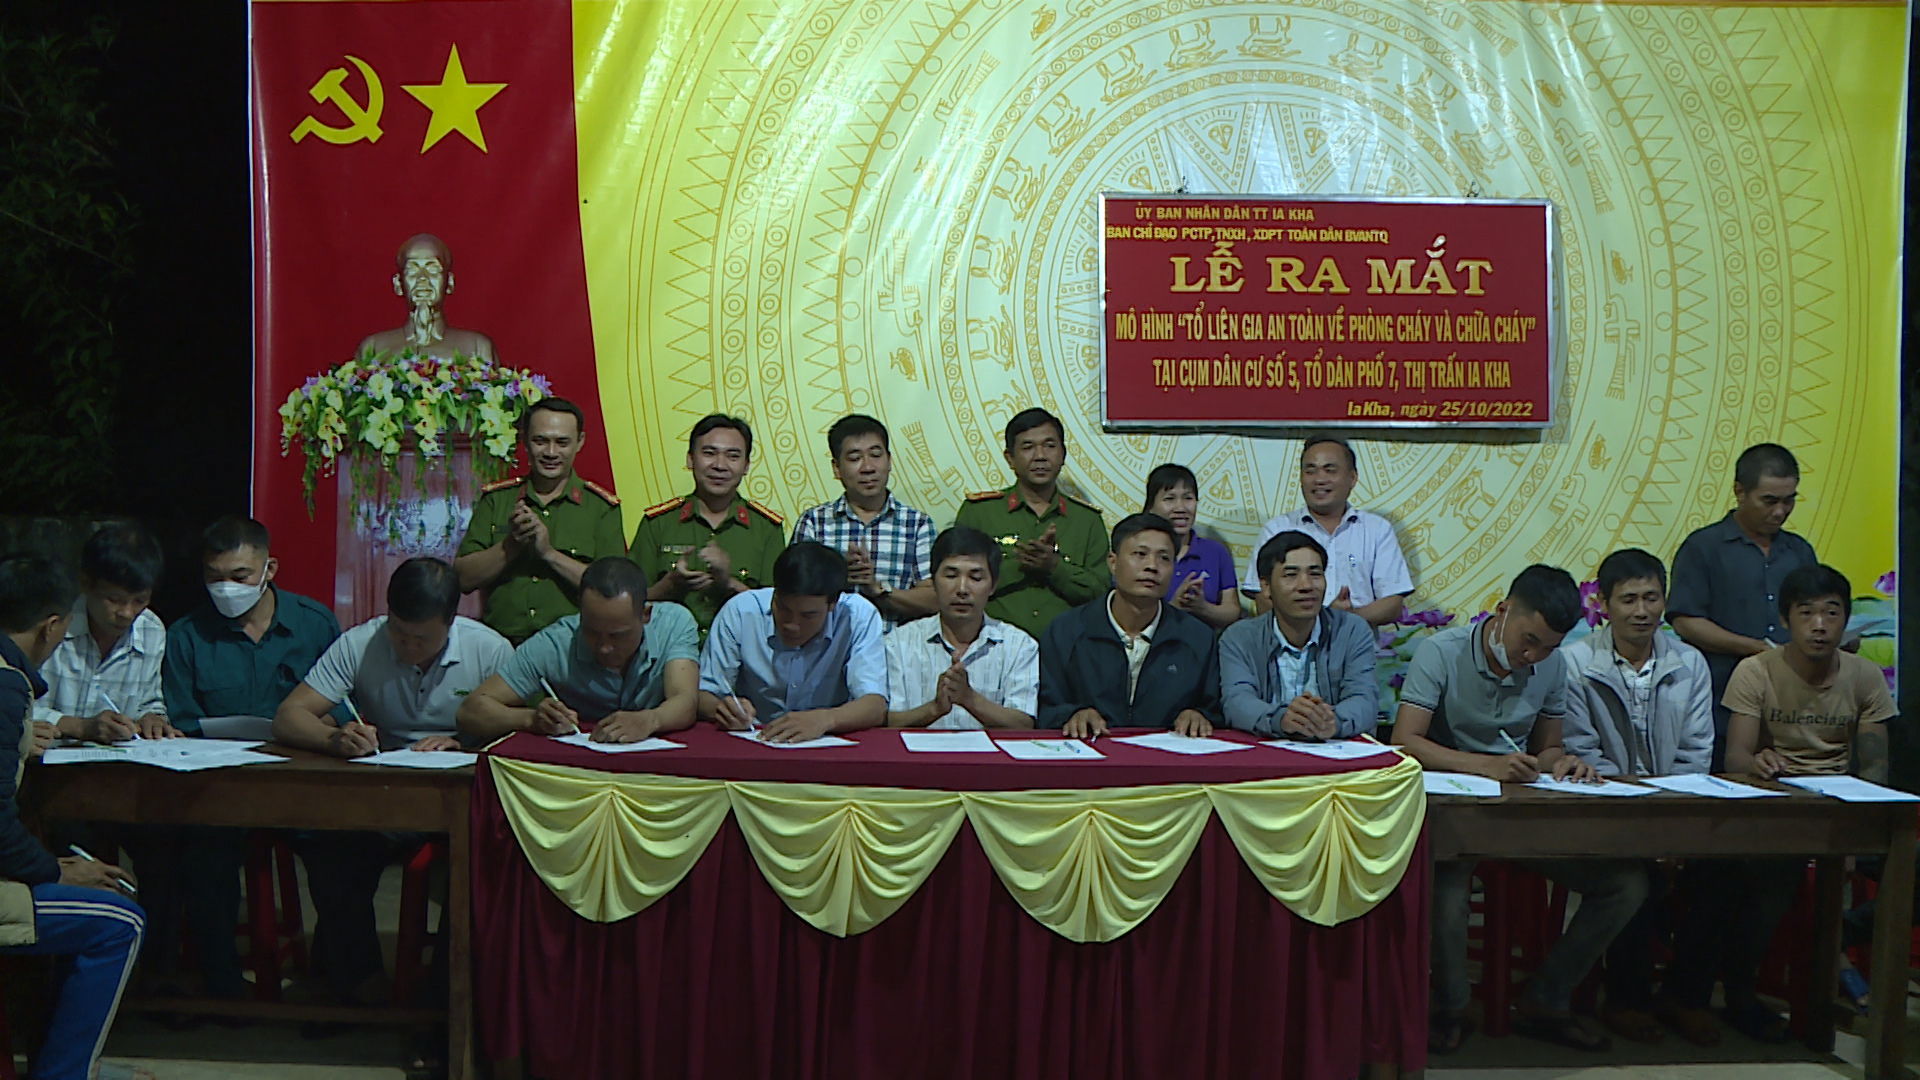 Article Thị trấn Ia Kha, thành lập, ra mắt mô hình “Tổ liên gia PCCC” tại cụm dân cư số 5 tổ dân phố 7.